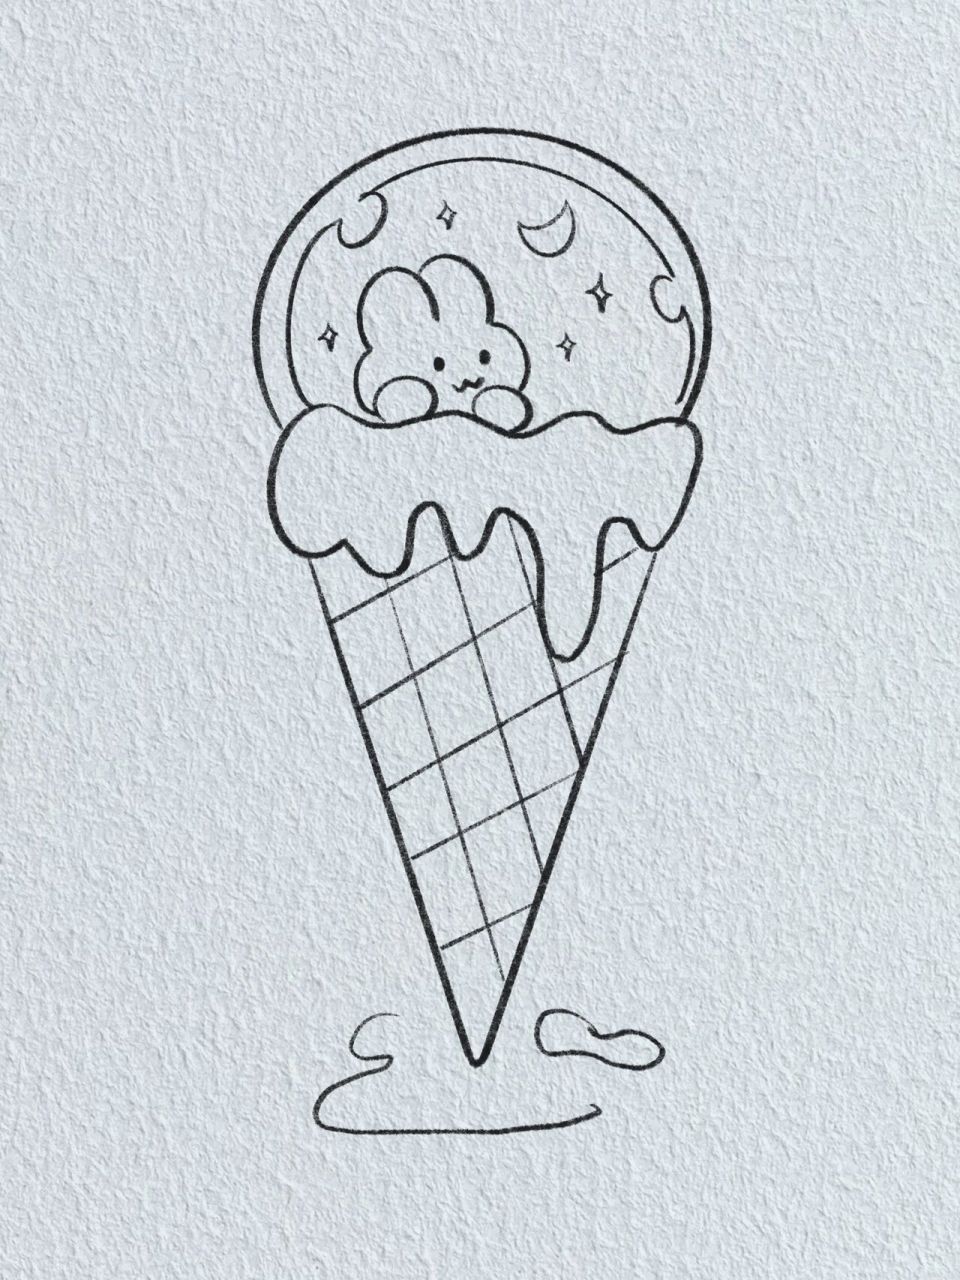 可爱甜筒冰淇淋简笔画图片